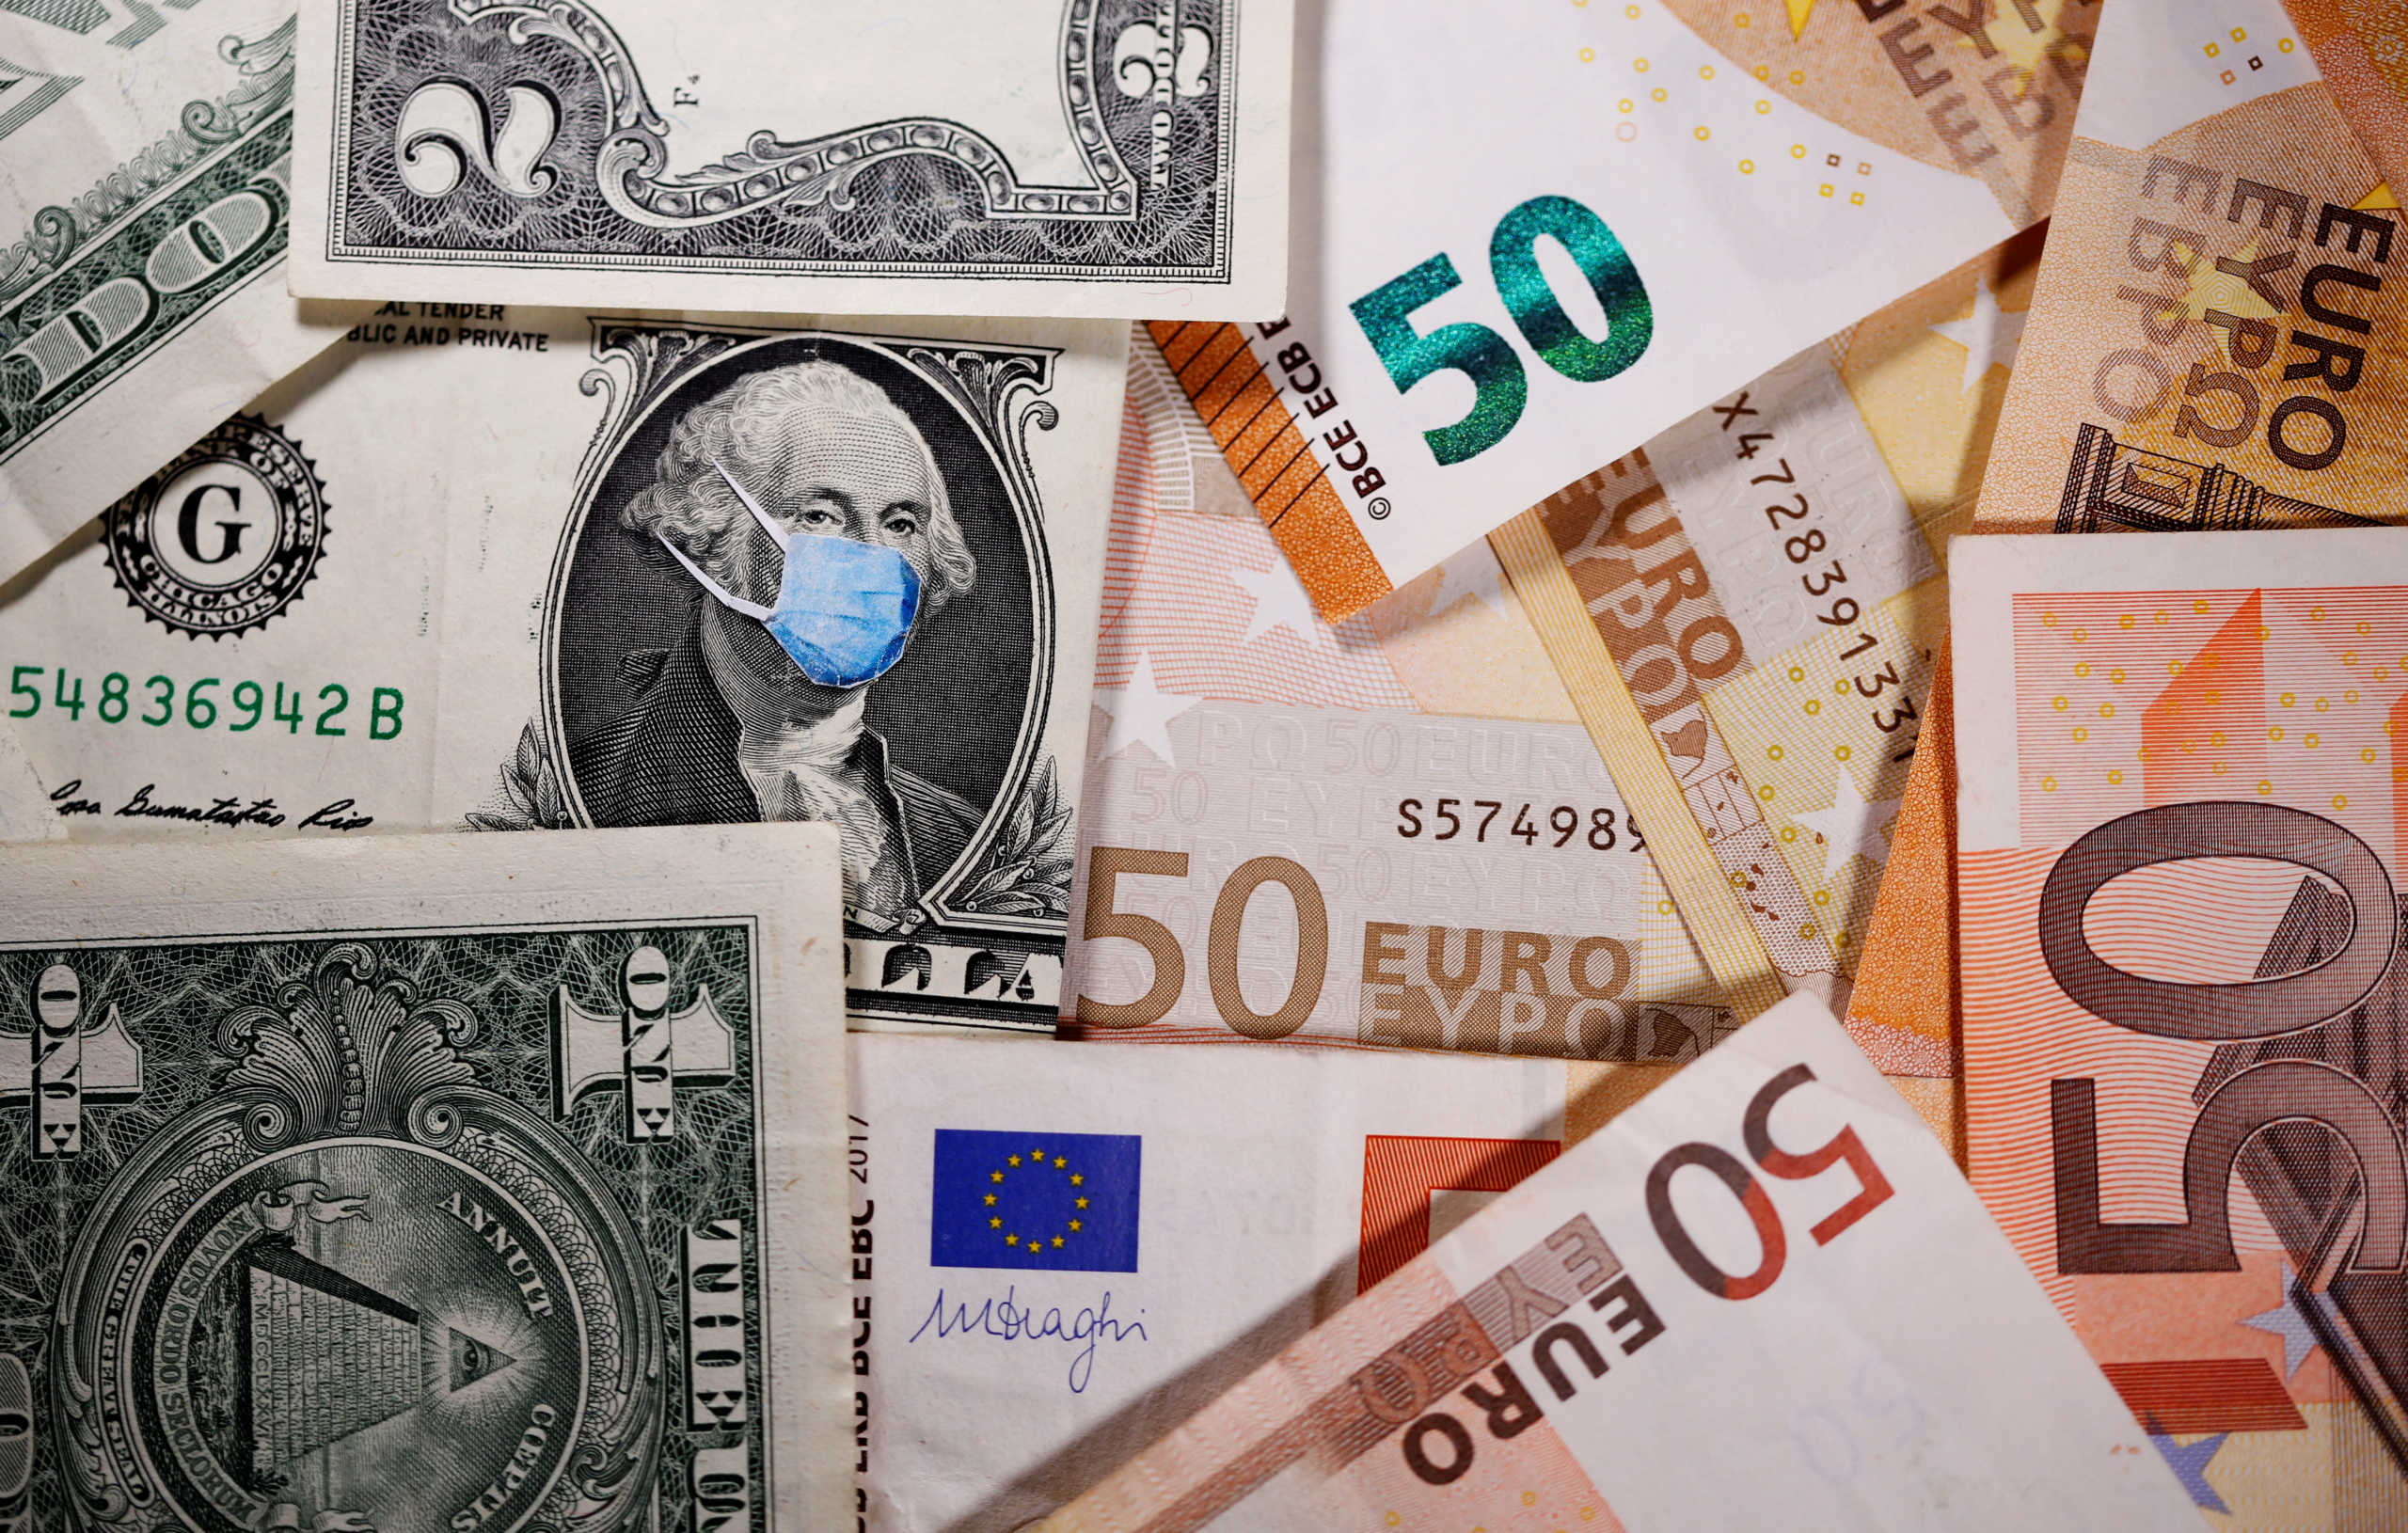 Αυτό πήγε καλά: Νέα υποχώρηση του ευρώ μετά την Γερμανική απόφαση για τα ομόλογα